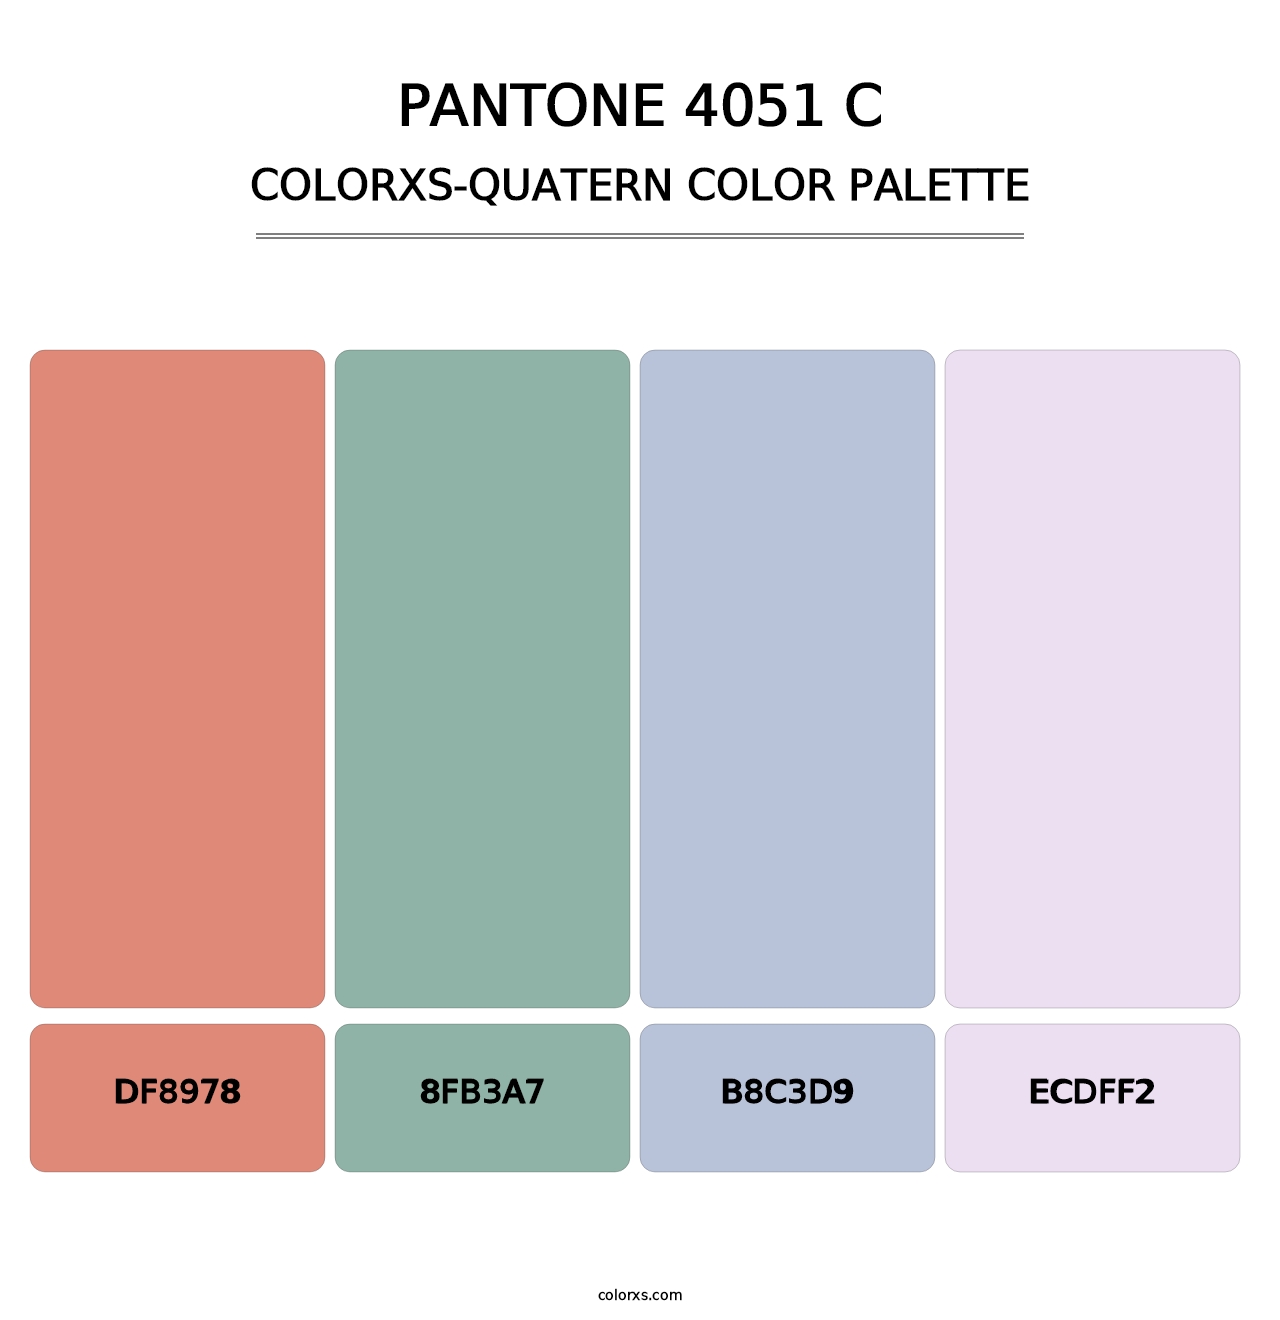 PANTONE 4051 C - Colorxs Quatern Palette